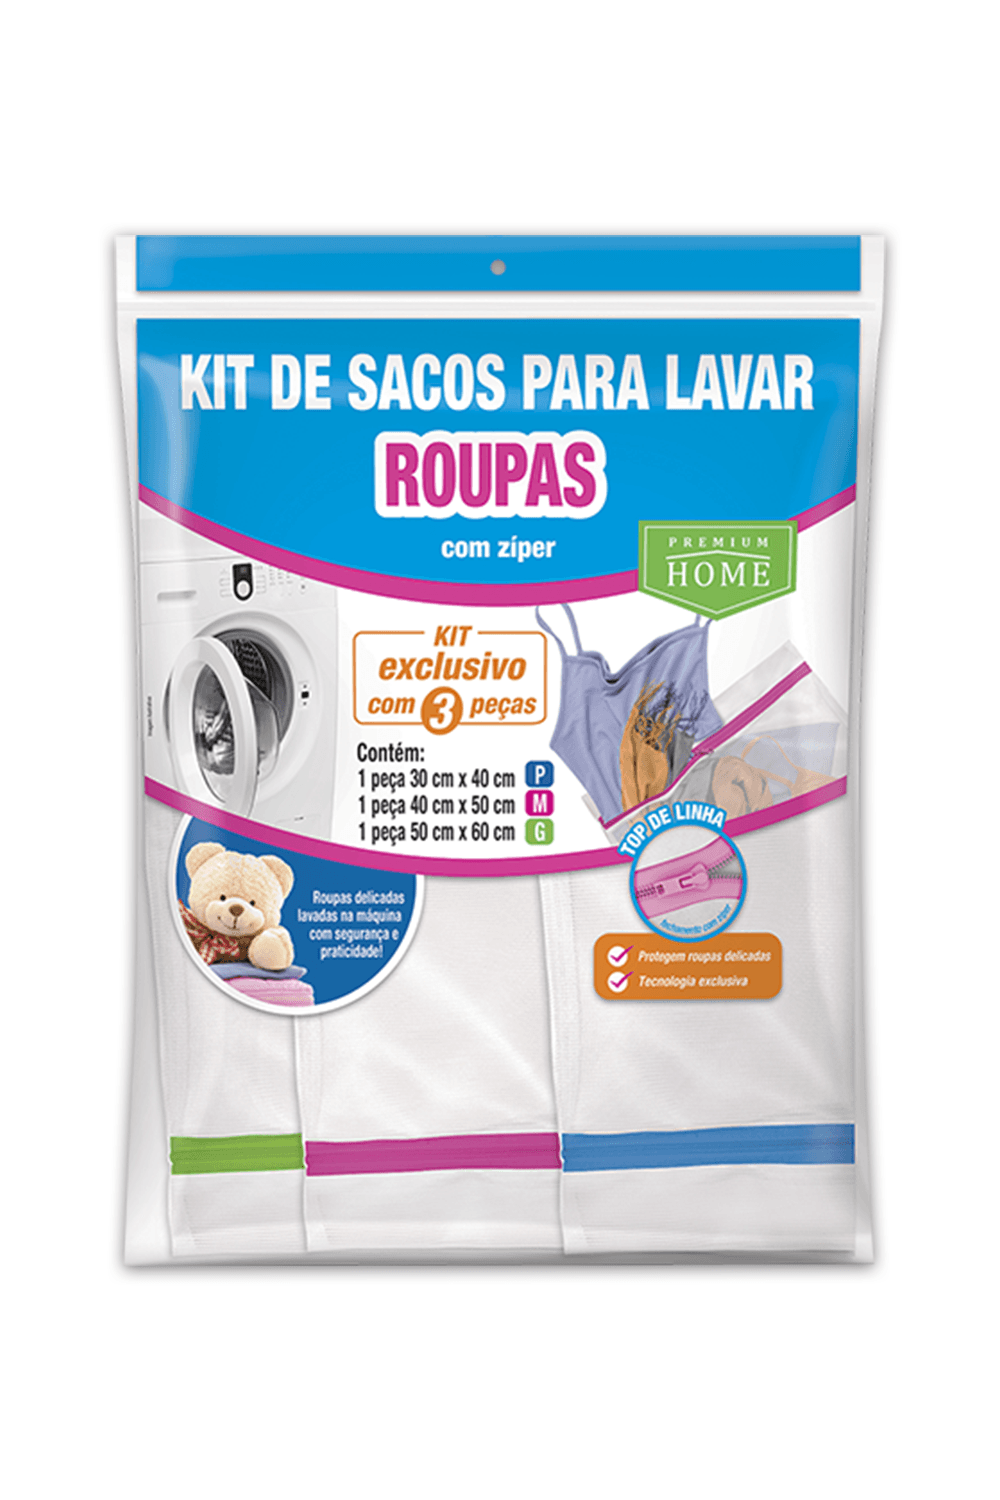 Kit de Saco p/ Lavar Roupas - 3 peças